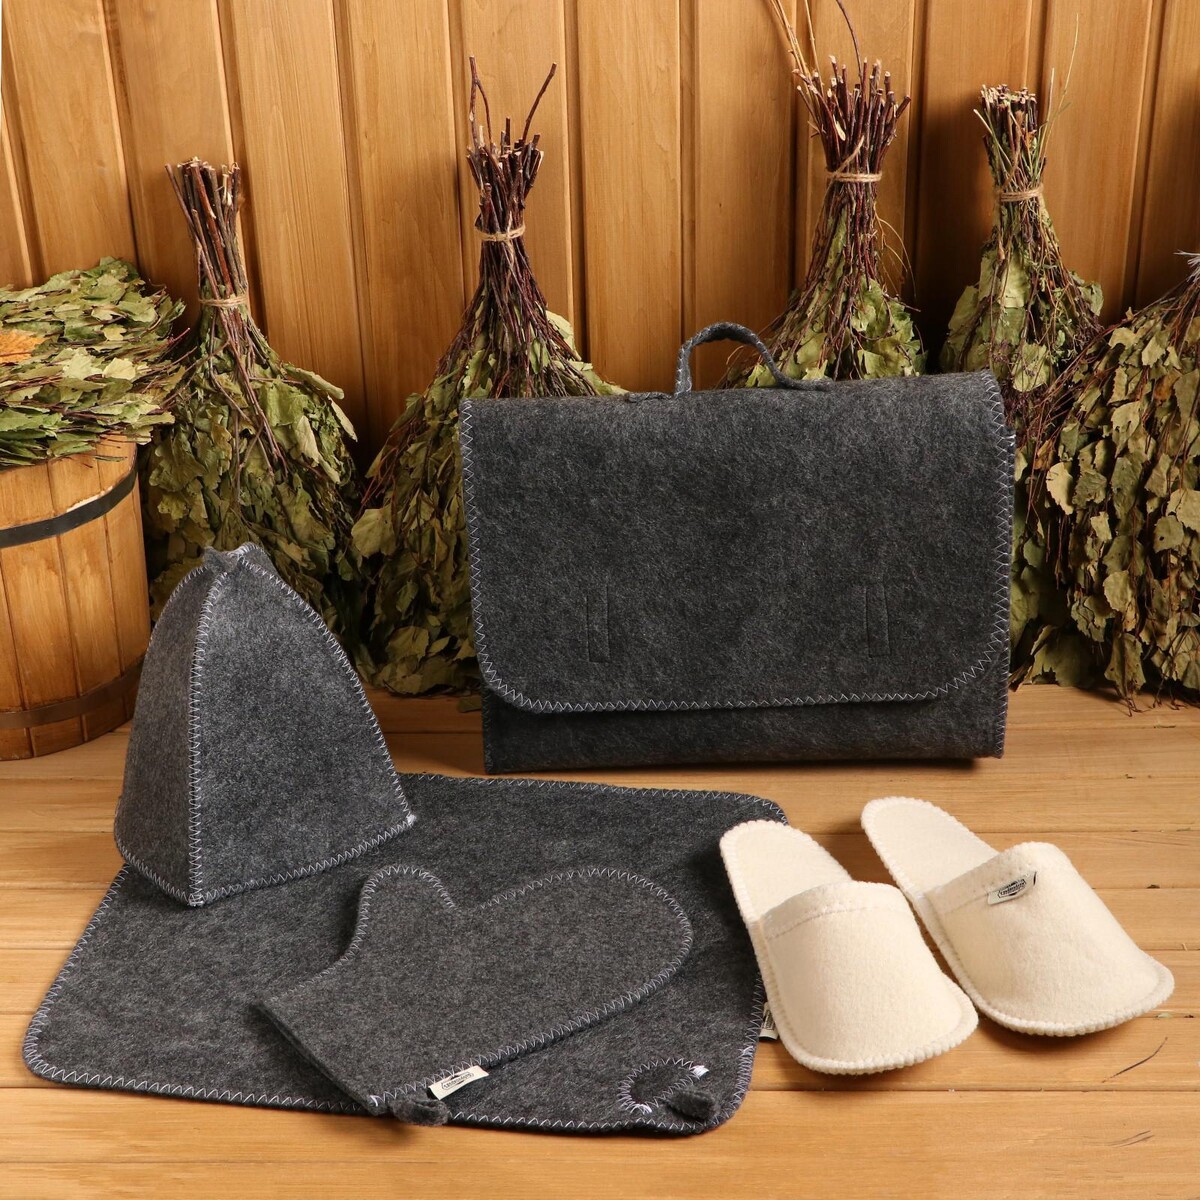 Набор банный портфель 5 предметов серый, без вышивки, войлок набор для бани 3 предмета шапка коврик рукавица войлок темный ни002